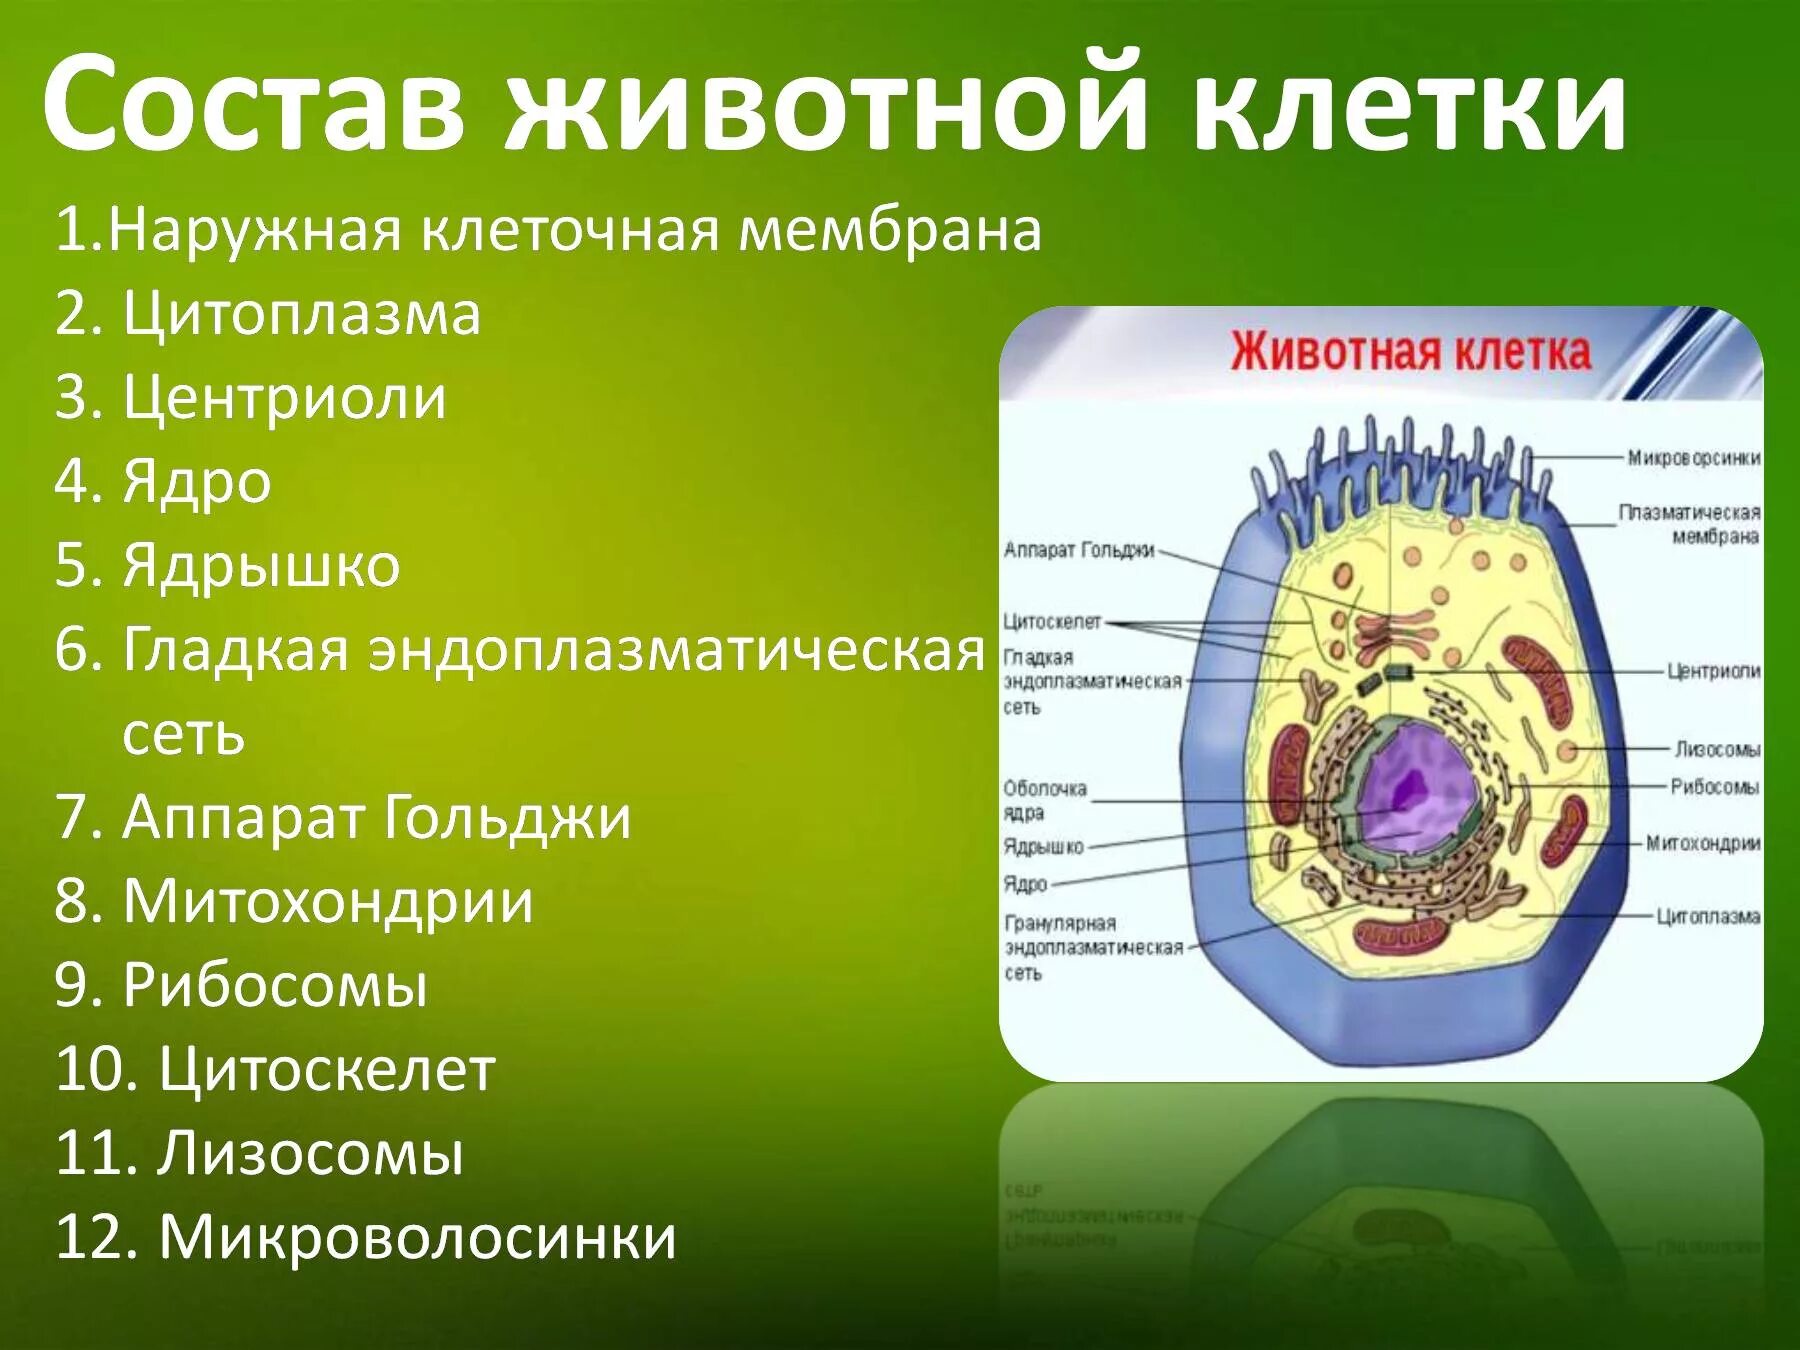 Пластиды прокариот. Состав клетки биология 5 класс животной клетки. Строение клетки мембрана цитоплазма органоиды ядро. Строение цитоплазмы животной клетки. Строение органелл животной клетки.